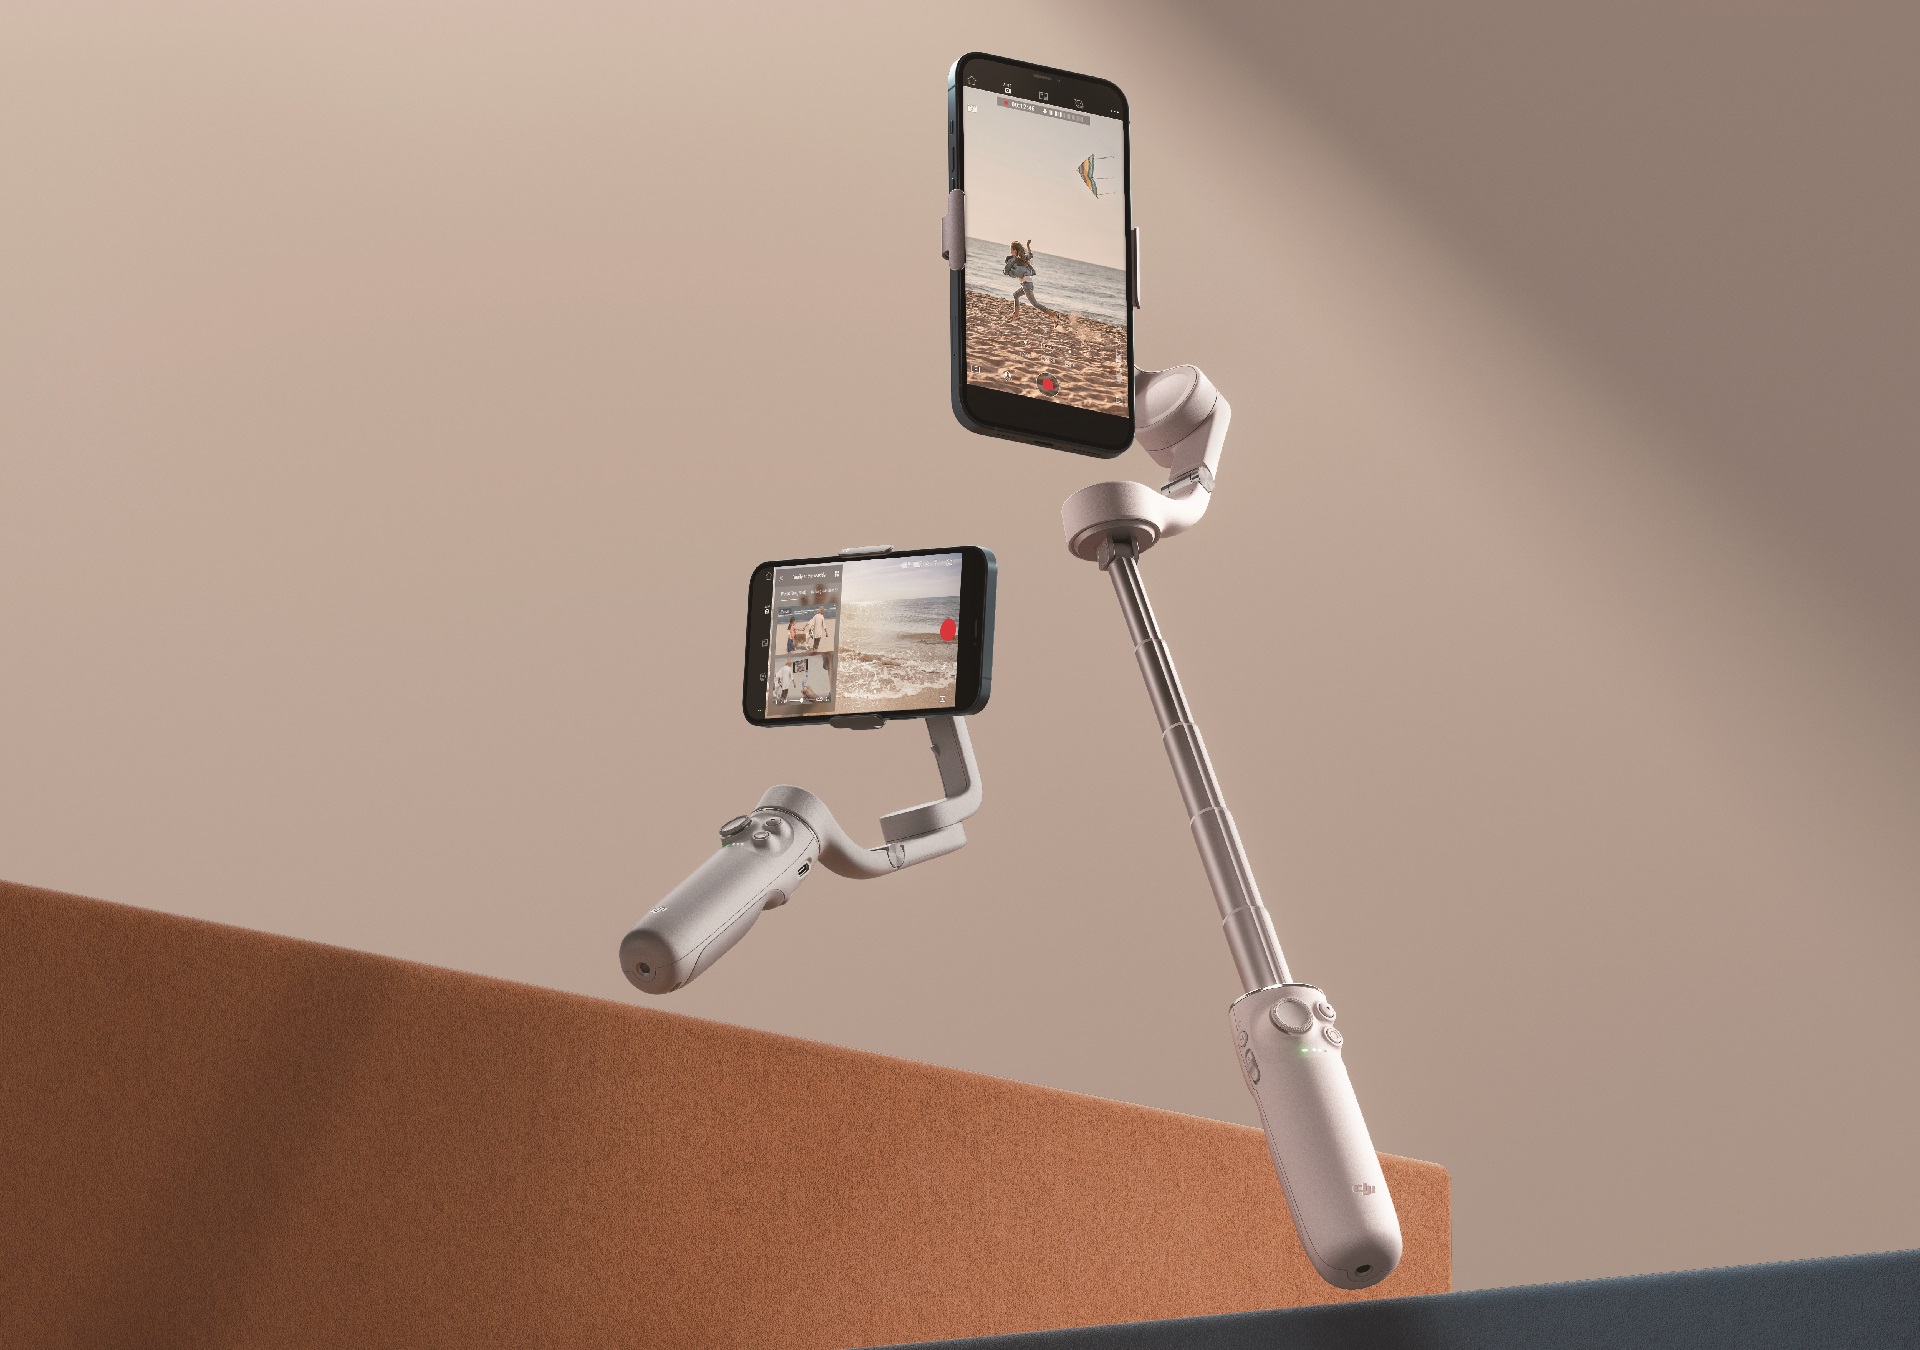 Anuncian el gimbal para smartphone DJI OM 5 - Más pequeño, liviano y con  barra de extensión incorporada